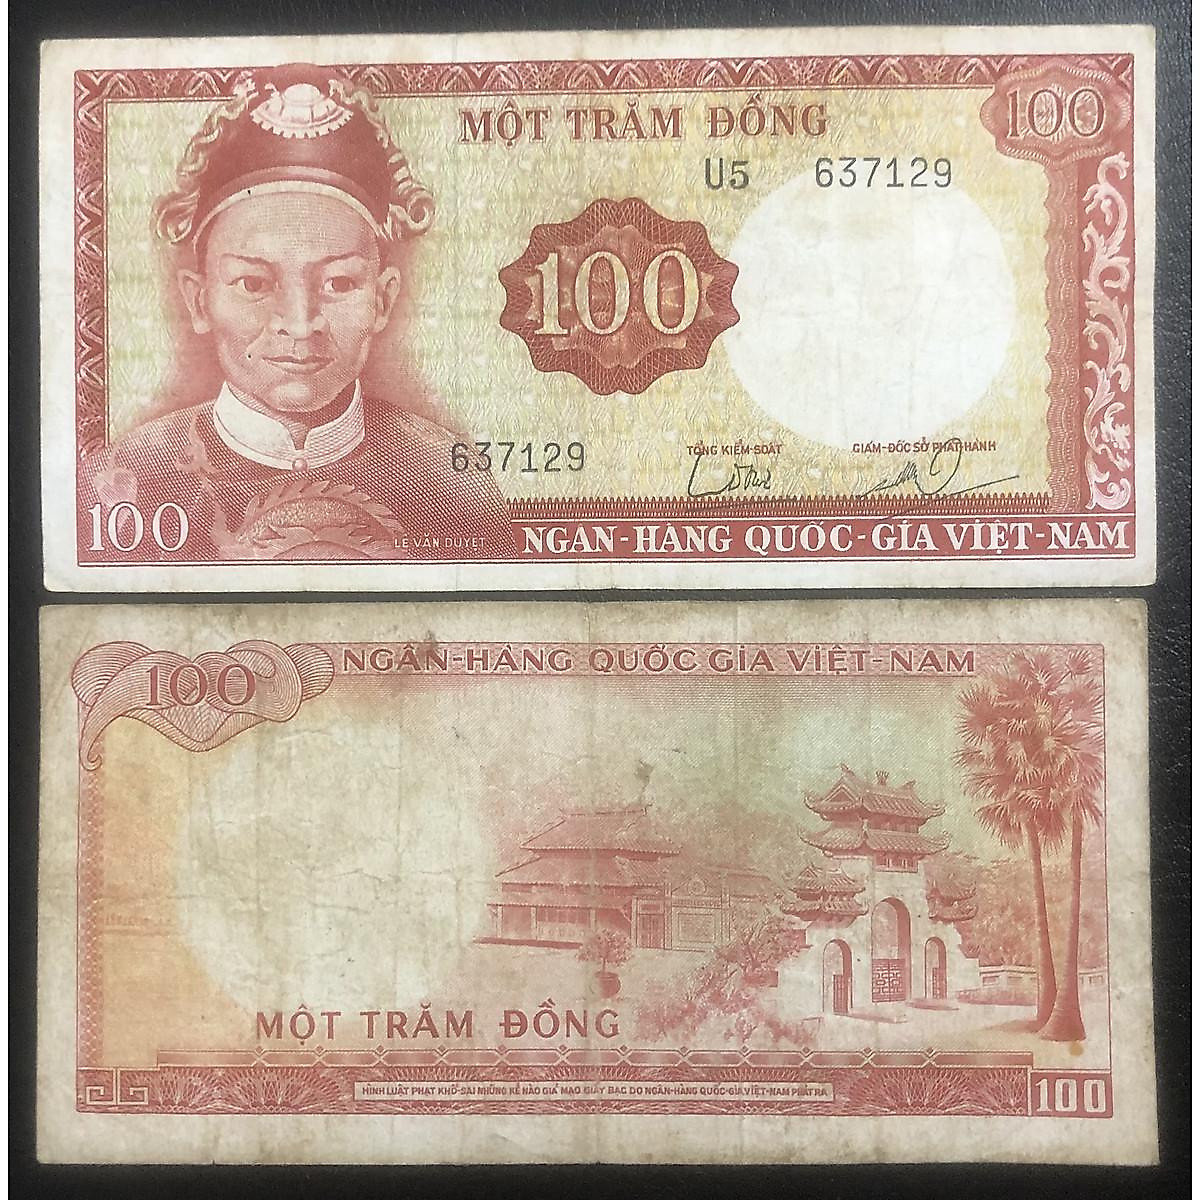 Tiền cổ in hình ảnh cụ Lê Văn Duyệt Việt Nam, tờ 100 đồng sưu tầm,